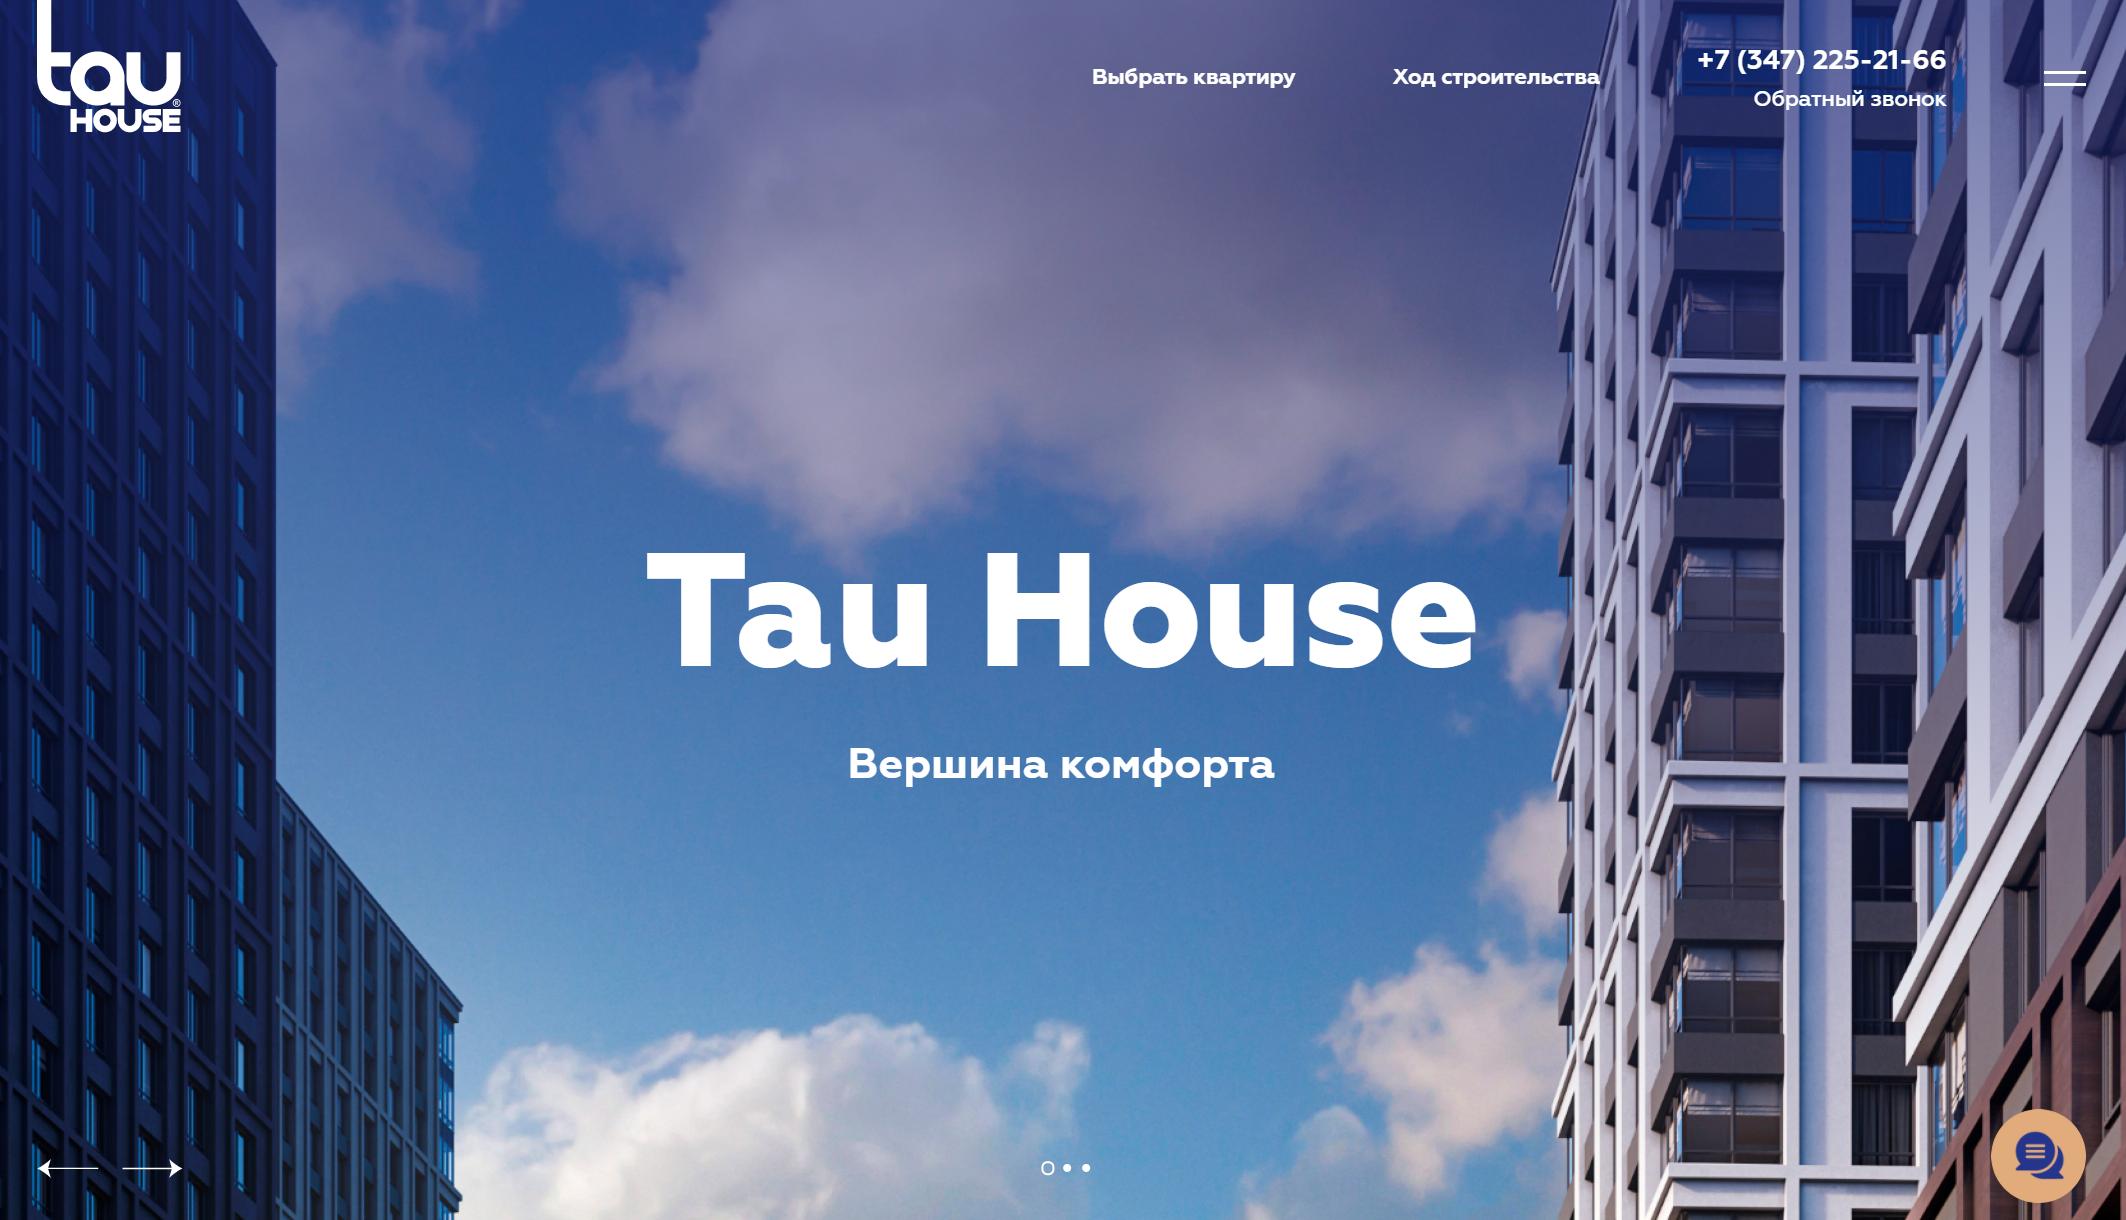 Tau House